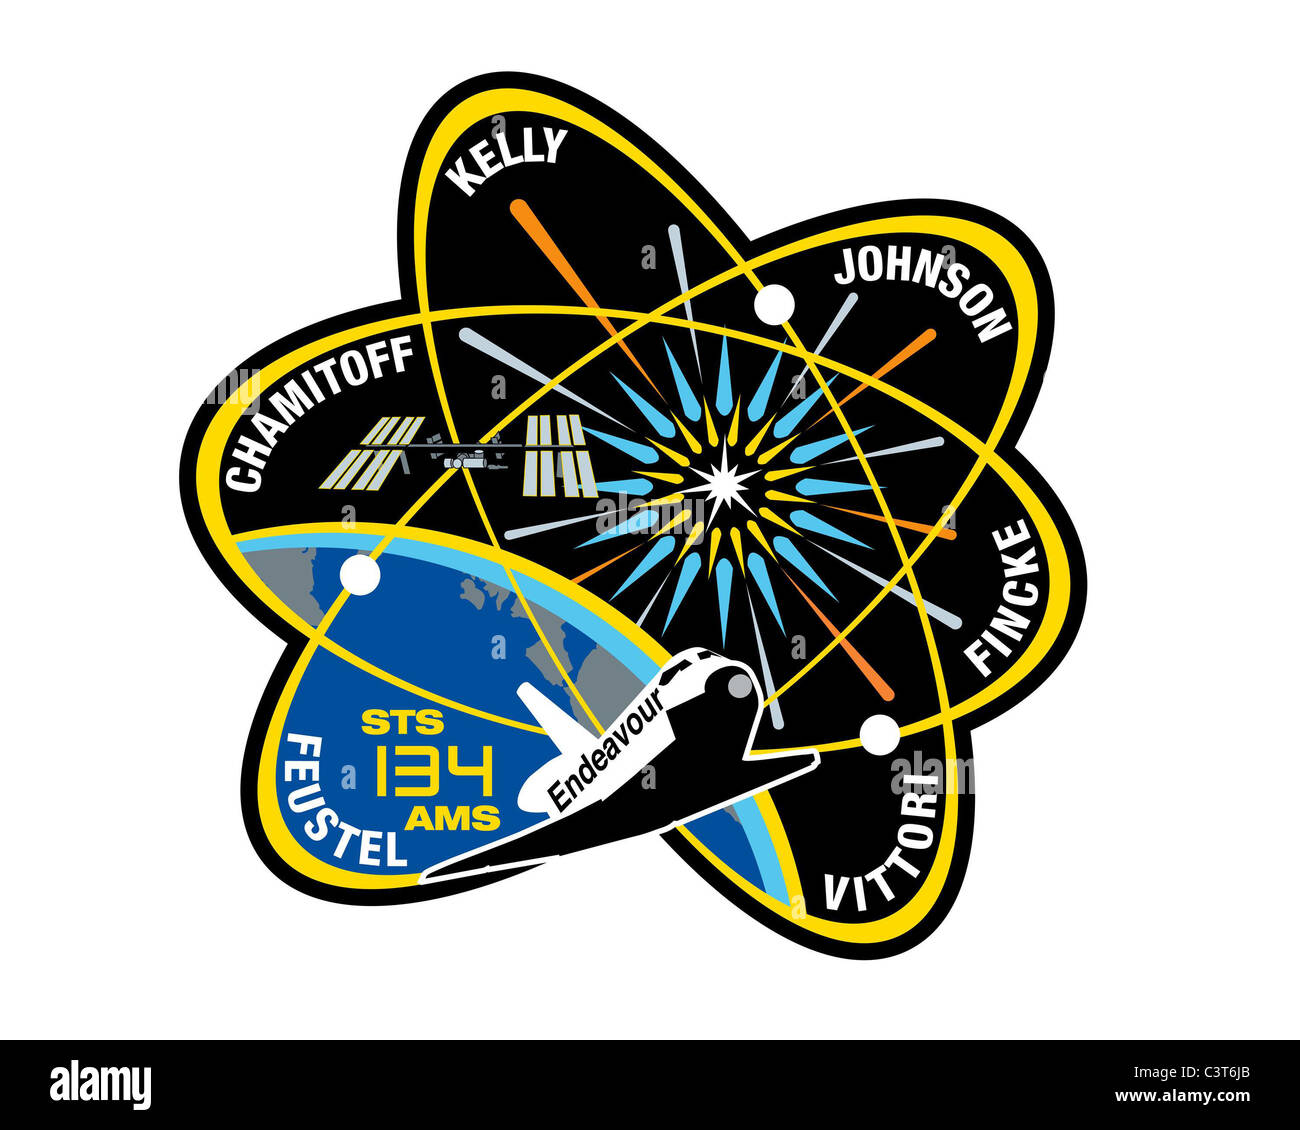 La mission STS-134 mission sts-134 patch patch la conception de l'équipage STS-134 patch met en lumière la recherche sur la station spatiale internationale en mettant l'accent sur la physique fondamentale de l'univers. sur cette mission, l'équipage de la navette spatiale Endeavour va installer le spectromètre magnétique Alpha (AMS) - une expérience de détection de particules cosmiques qui utilise le premier aimant supraconducteur à être réalisées dans l'espace. La forme du patch est inspiré par le symbole atomique, et représente l'atome avec les électrons en orbite autour du noyau. Banque D'Images